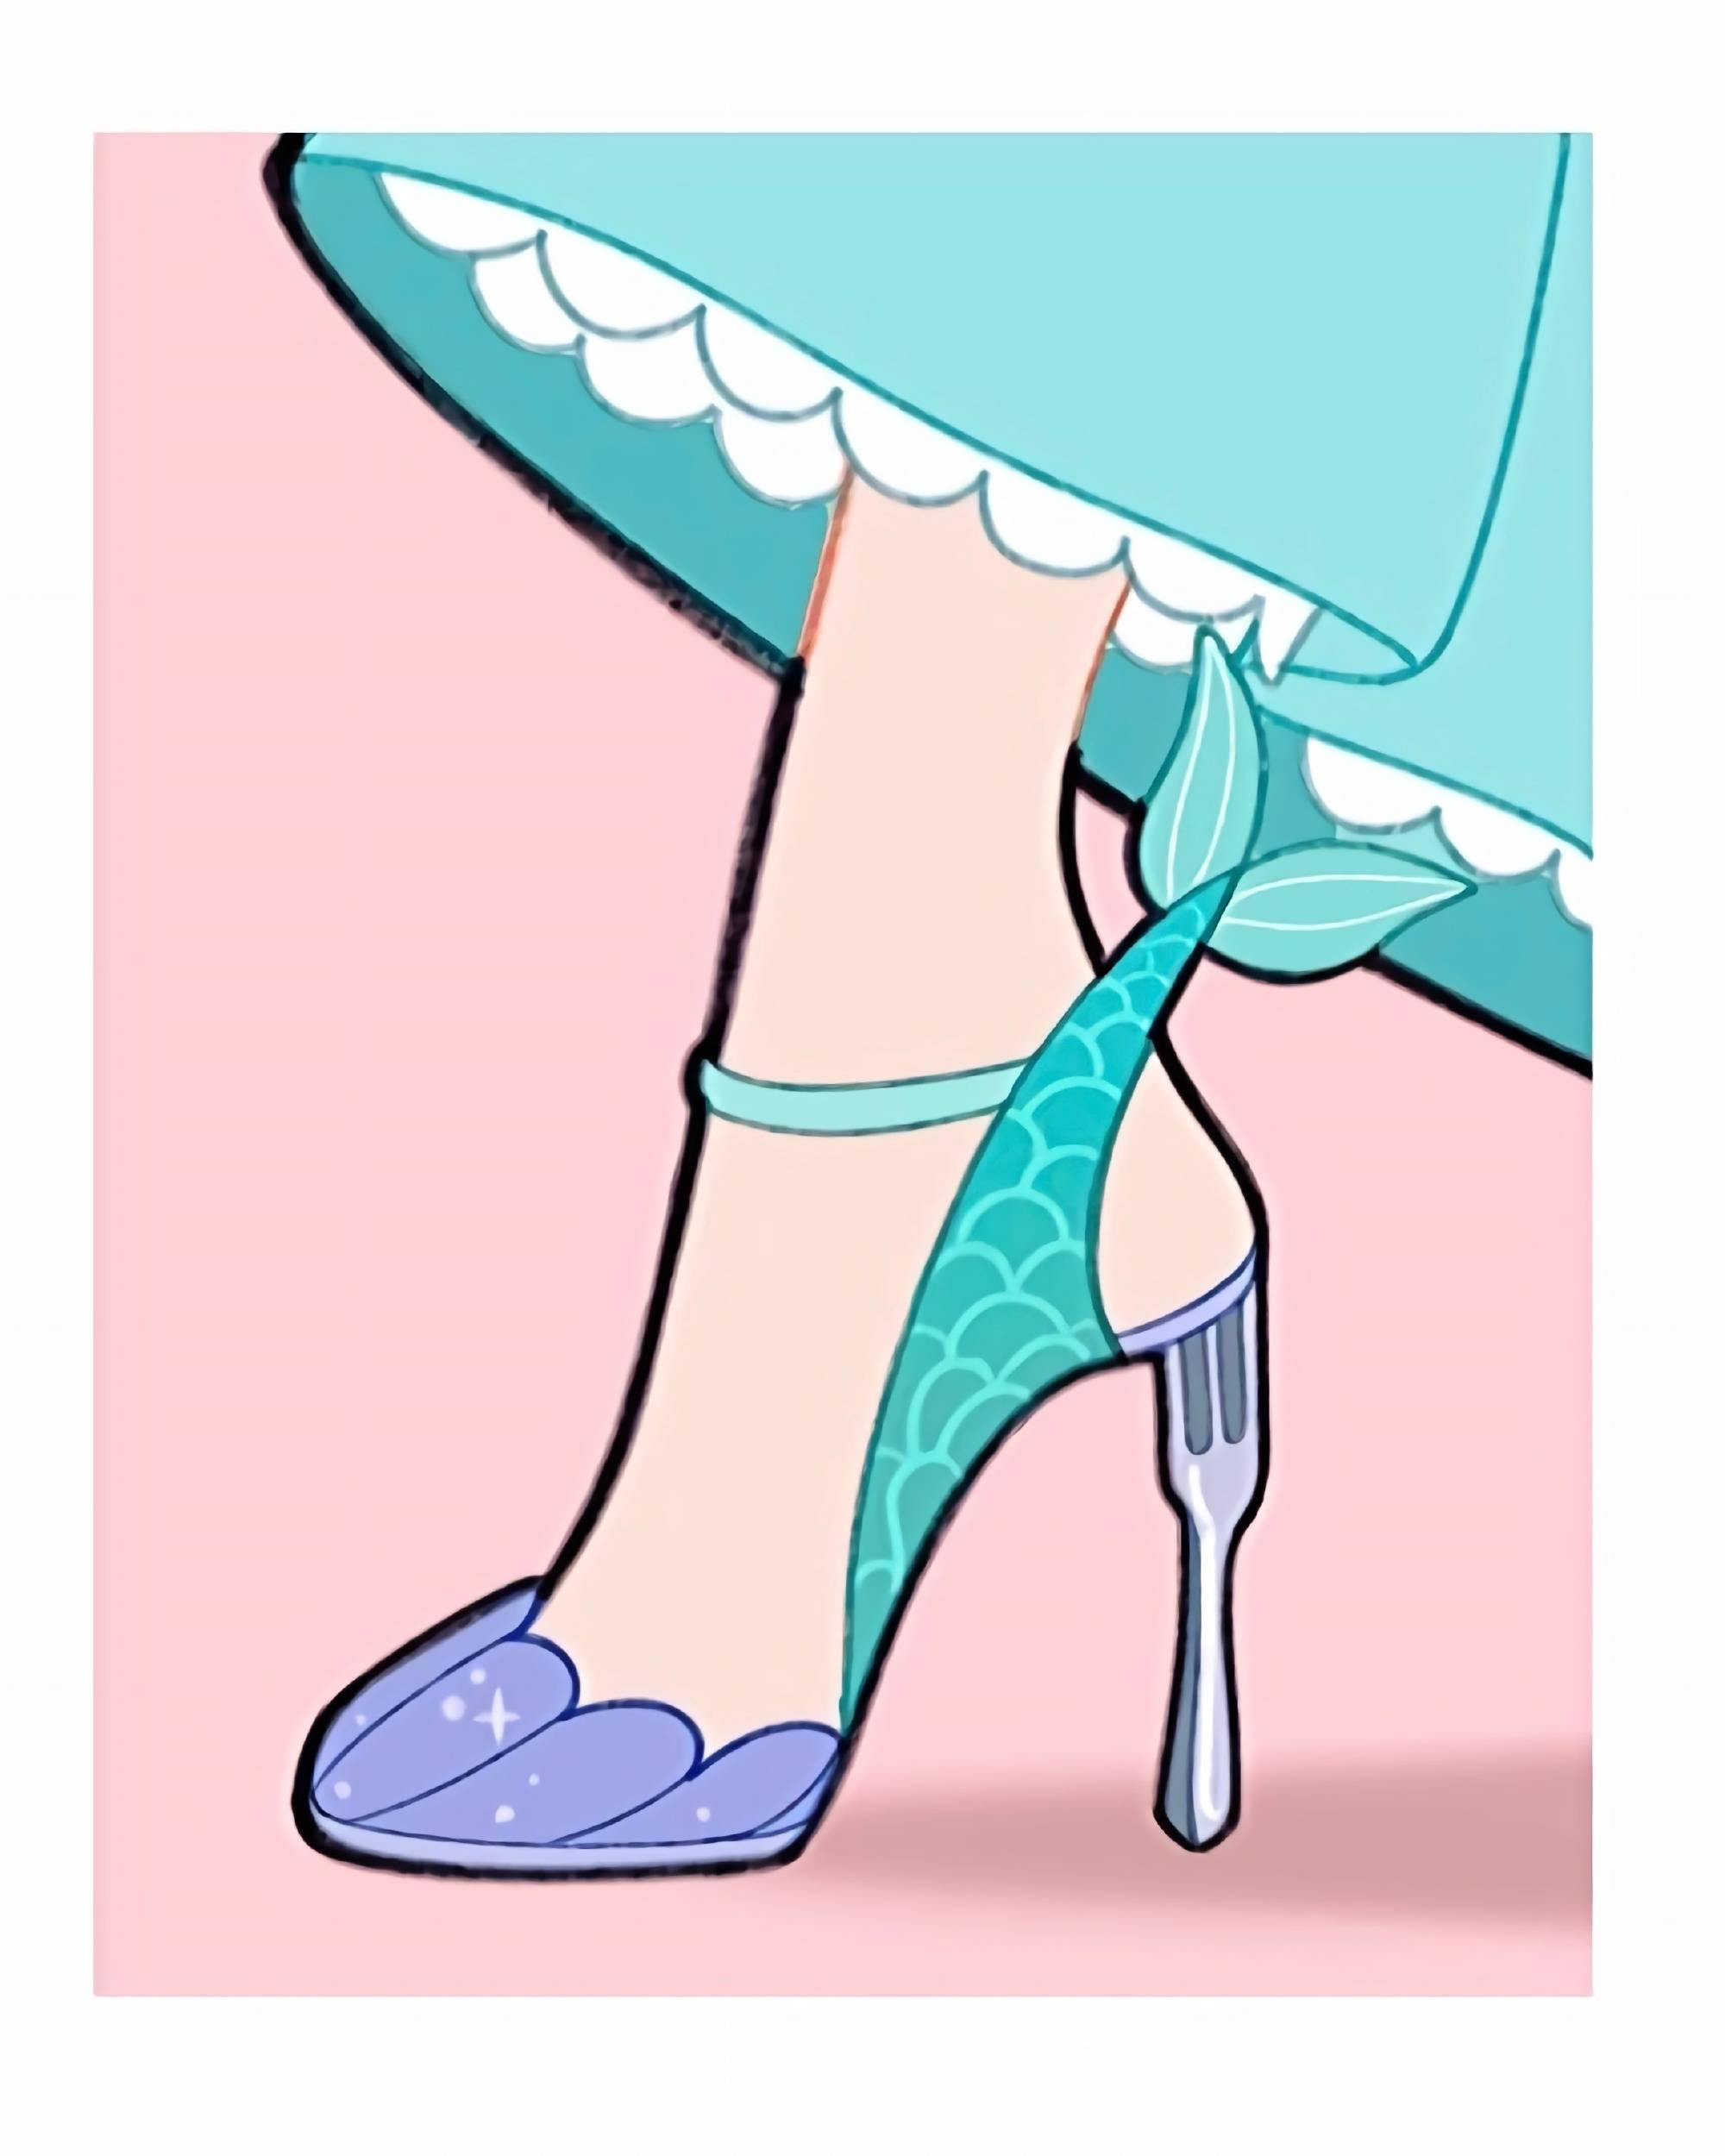 原创画师设计迪士尼公主舞鞋看到不同的鞋子你能分辨哪位公主吗